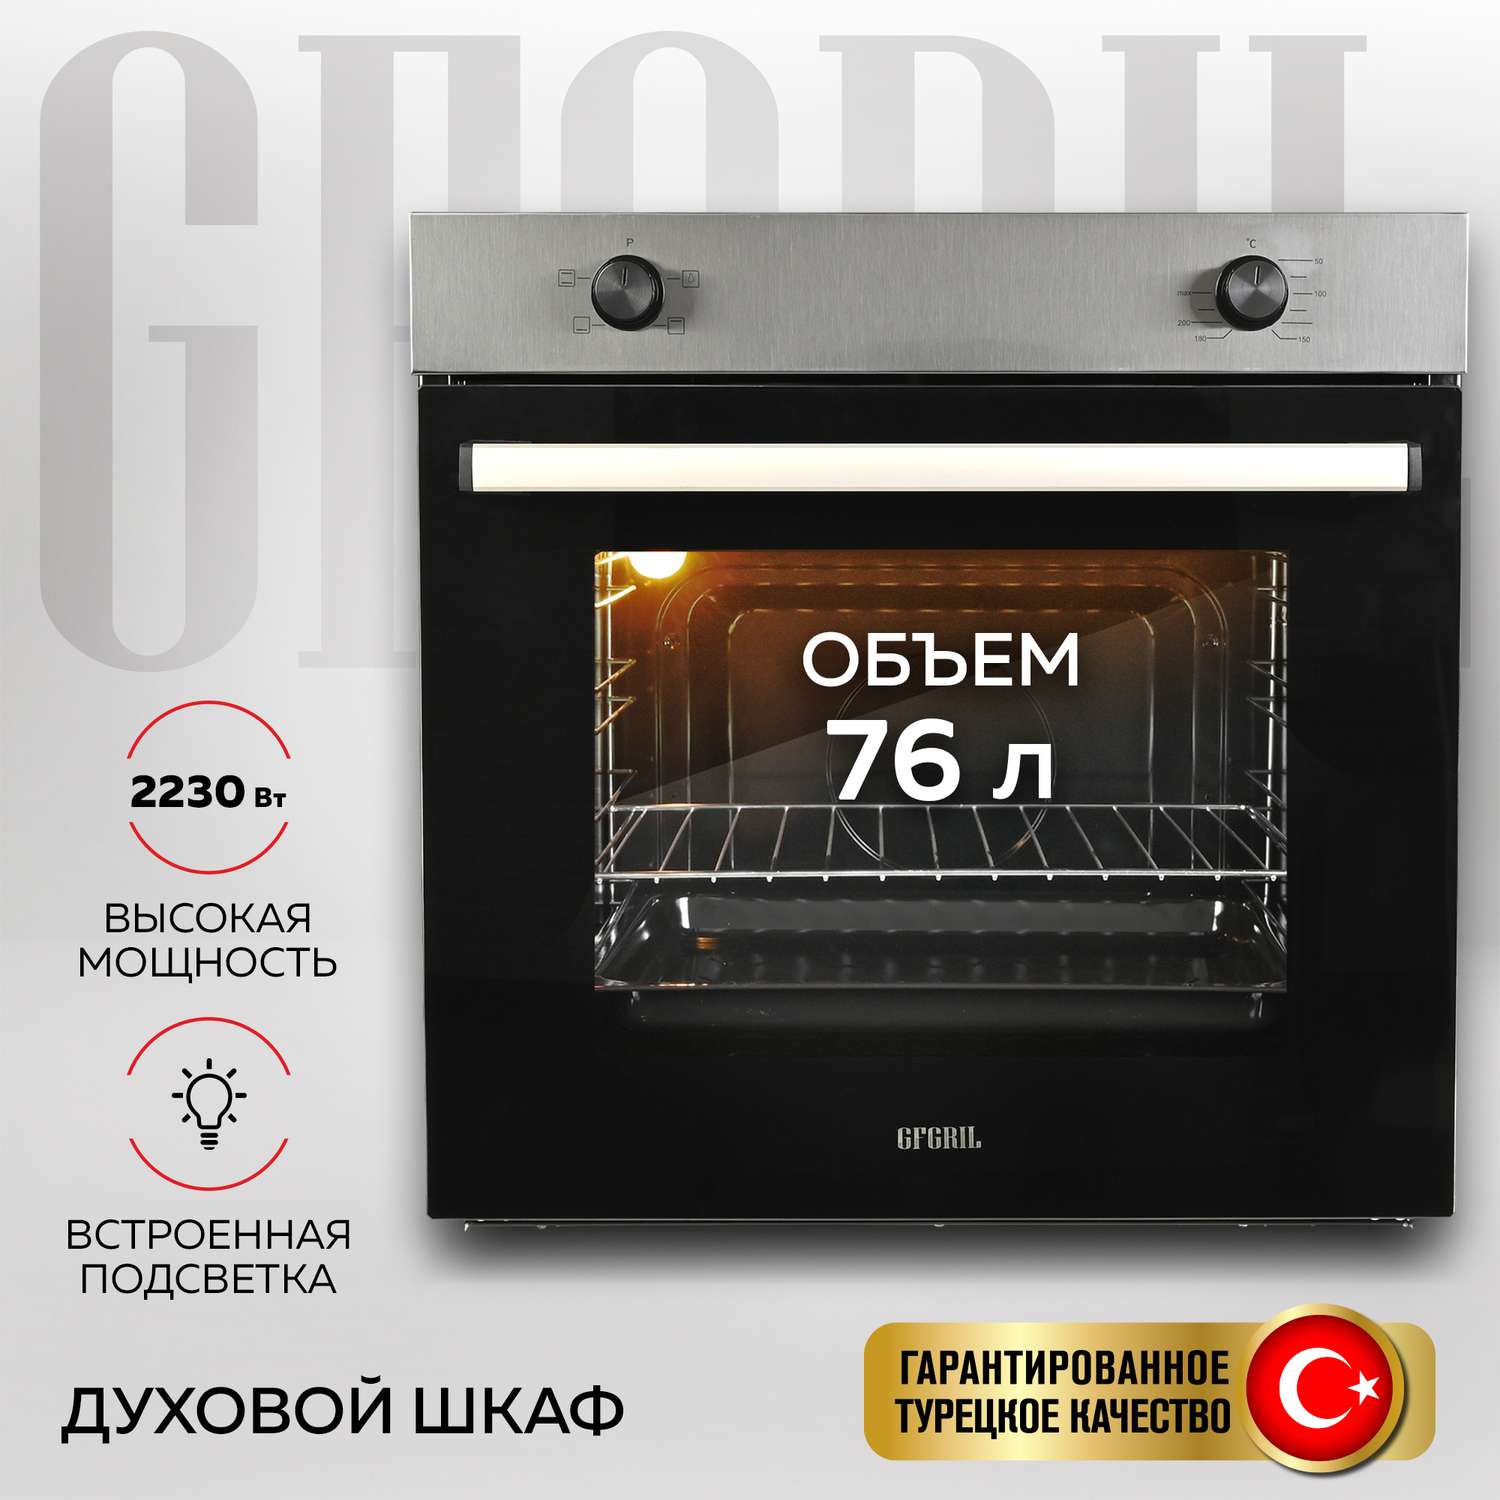 Духовой шкаф GFGRIL GF-EO100IN 76 л 3+1 программ конвекция таймер панель - нержавейка - фото 1